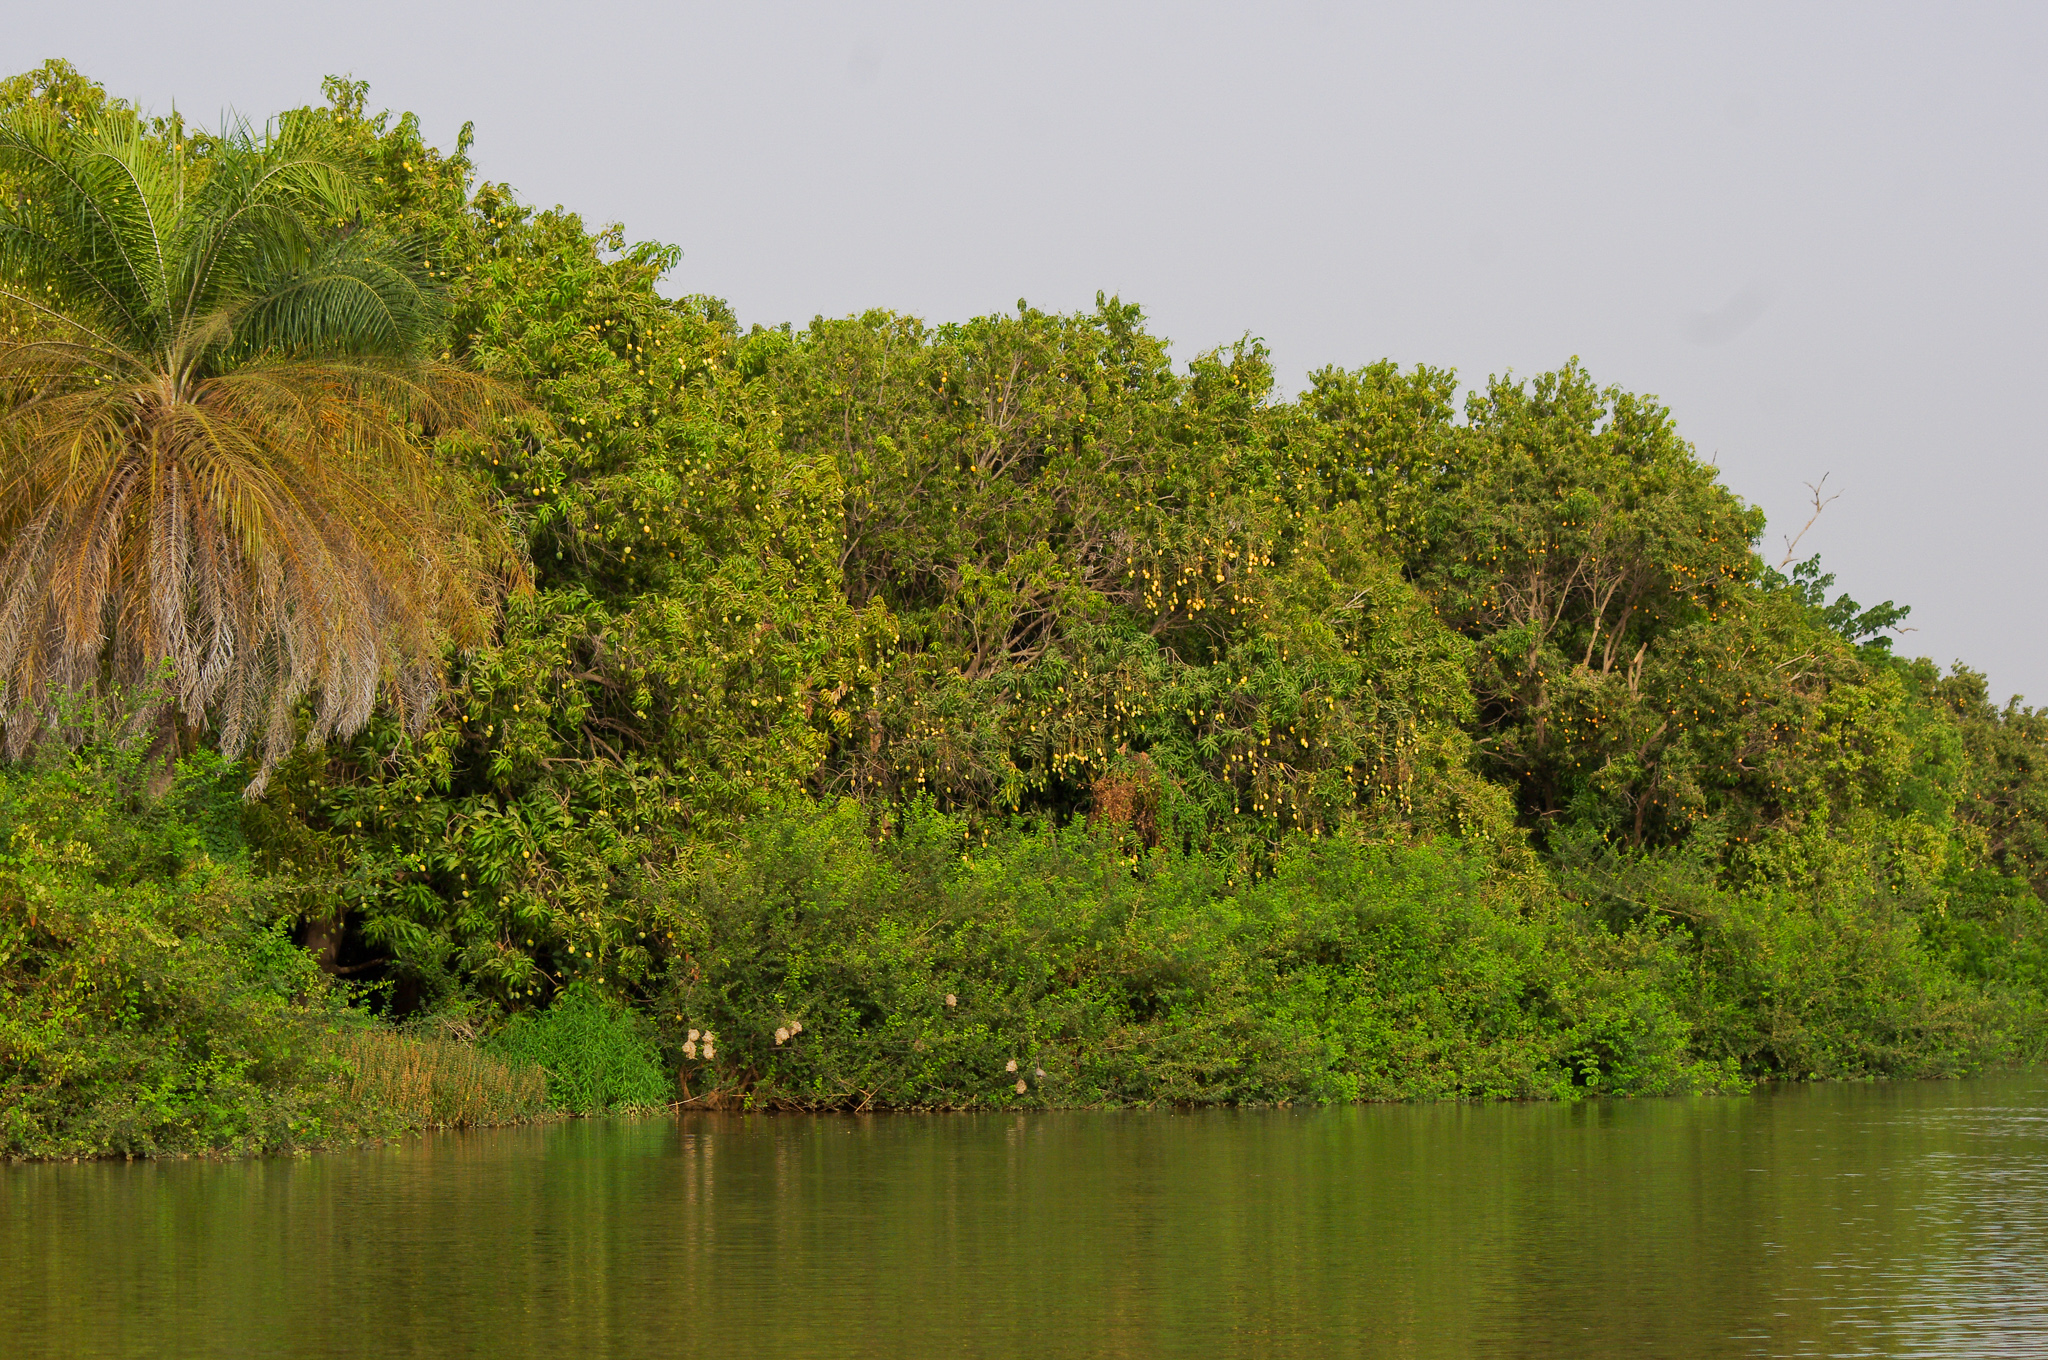 wat te doen in Gambia, de Gambiarivier. Gave wildlife bestemmingen voor tijdens de kerstvakantie